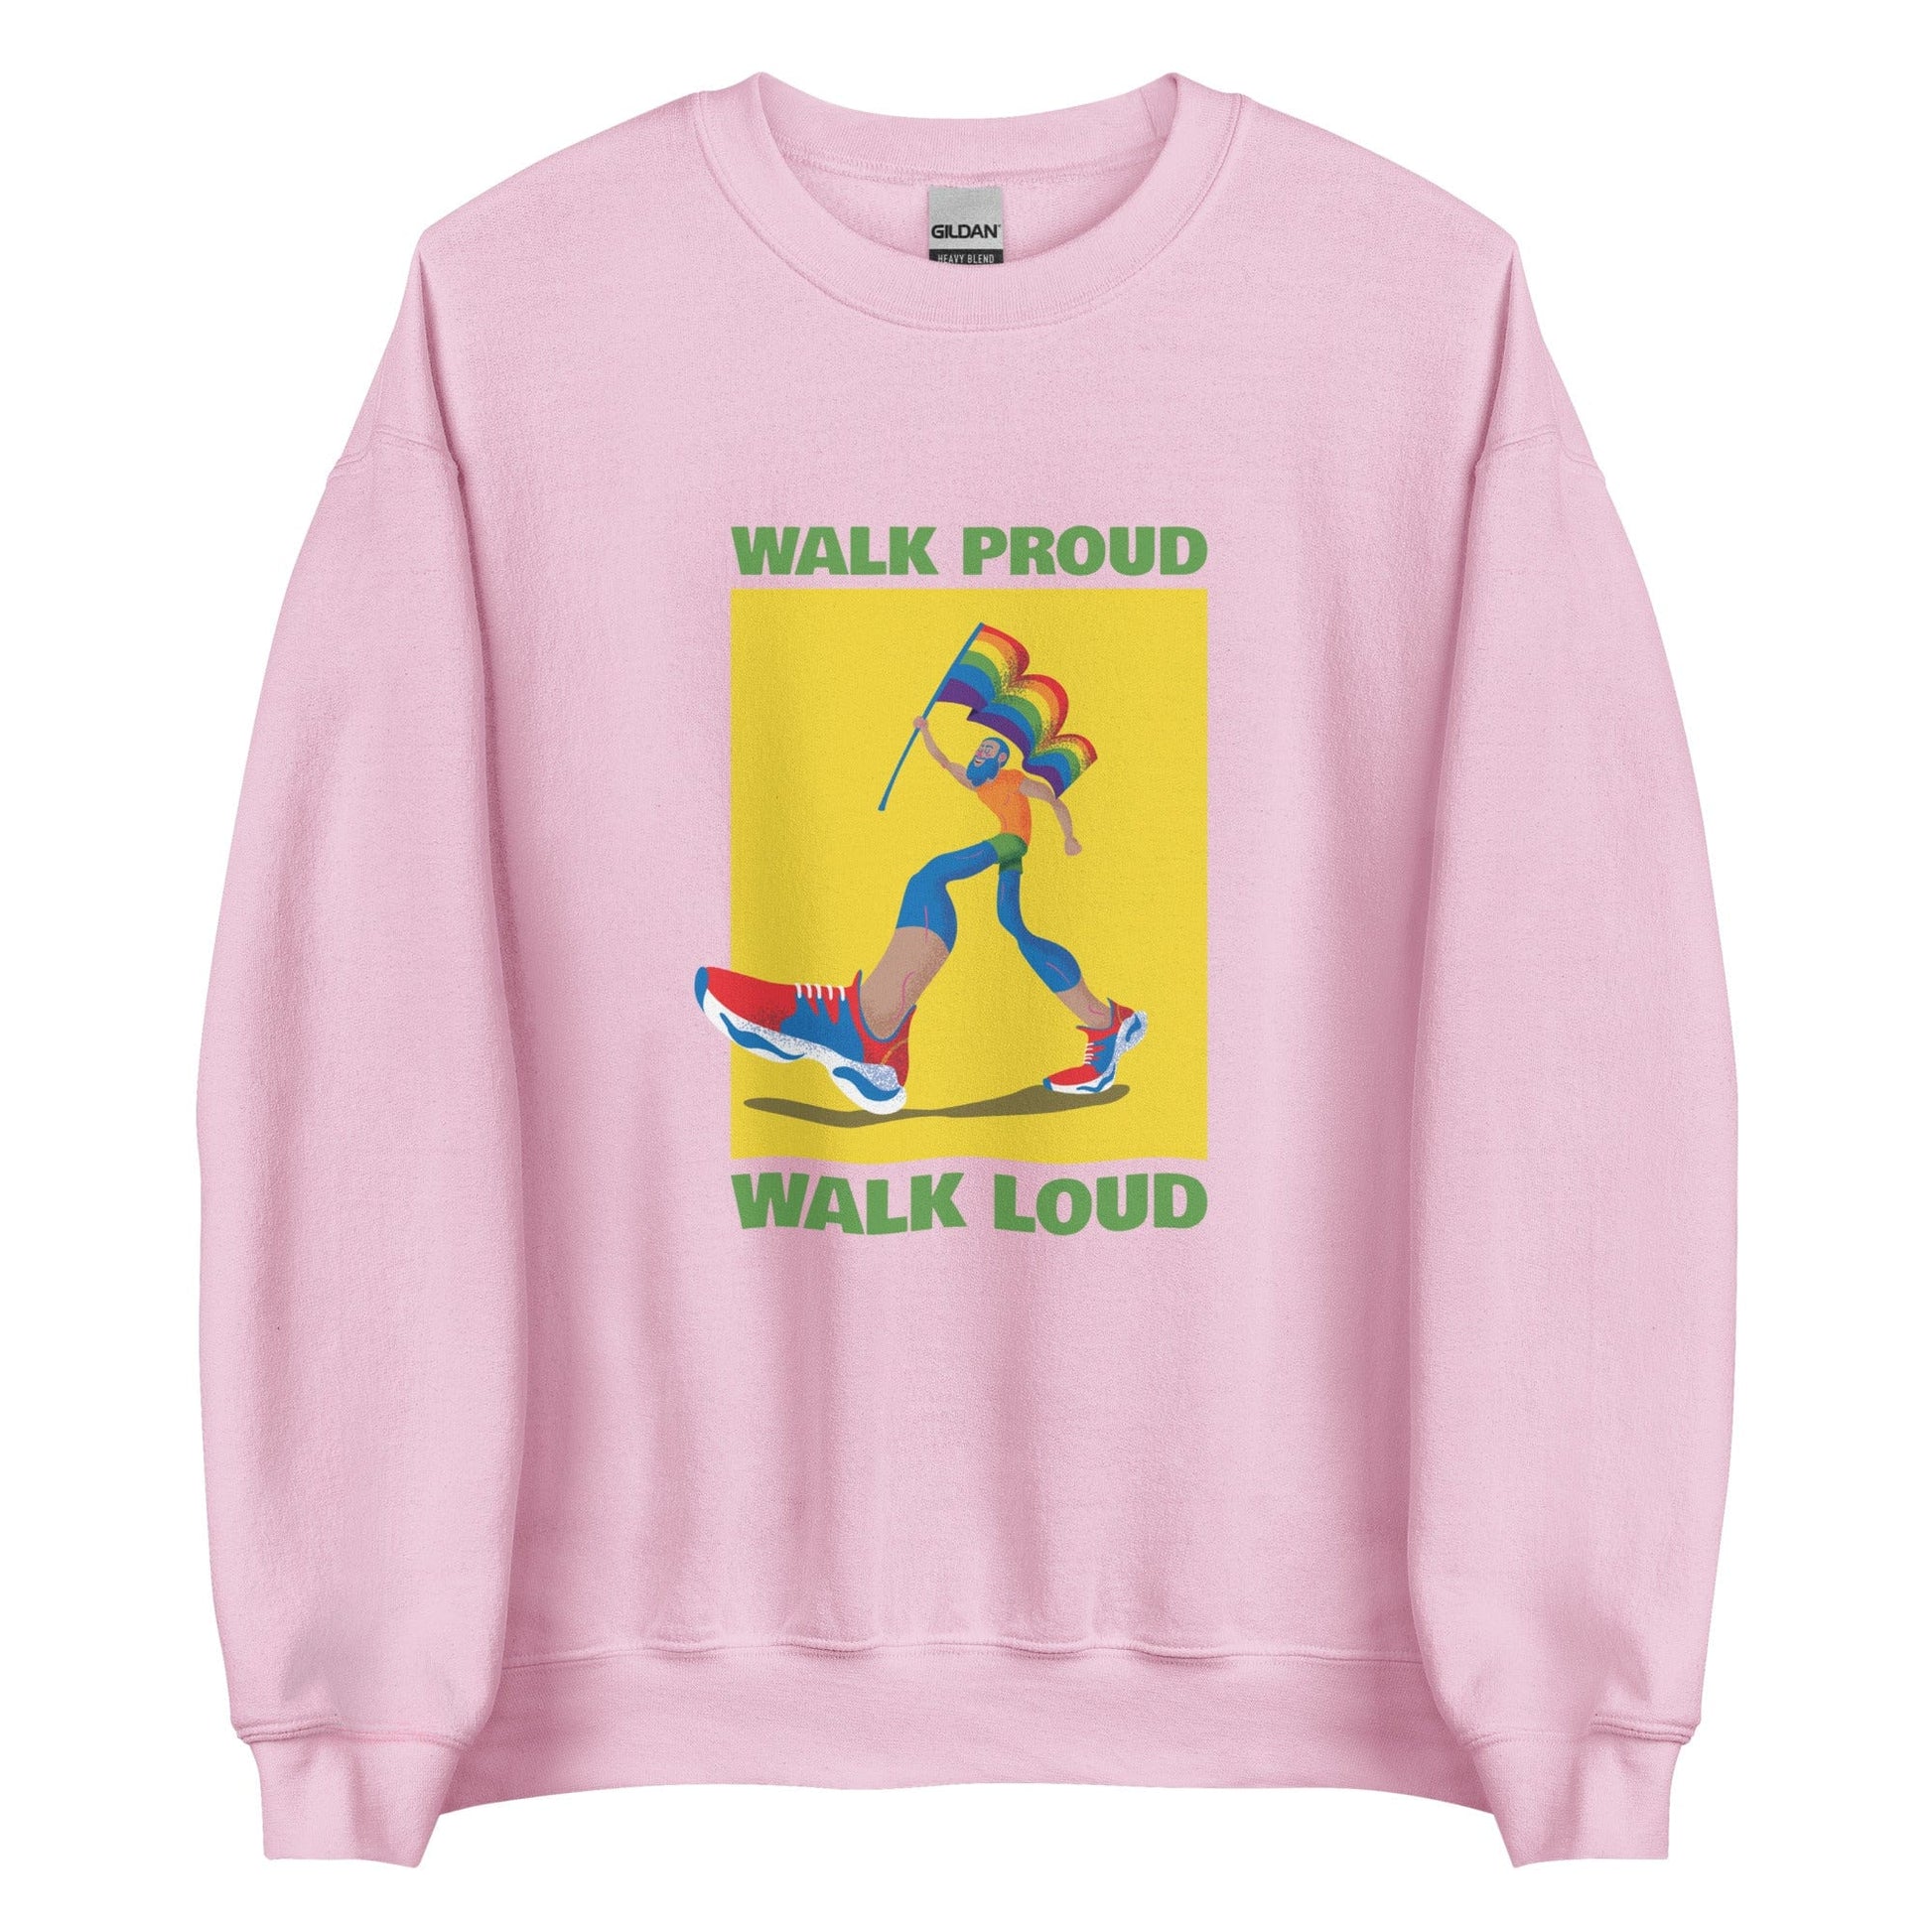 queer-pride-sweatshirt-walk-proud-walk-loud-lgbtq-gay-apparel-pink-front